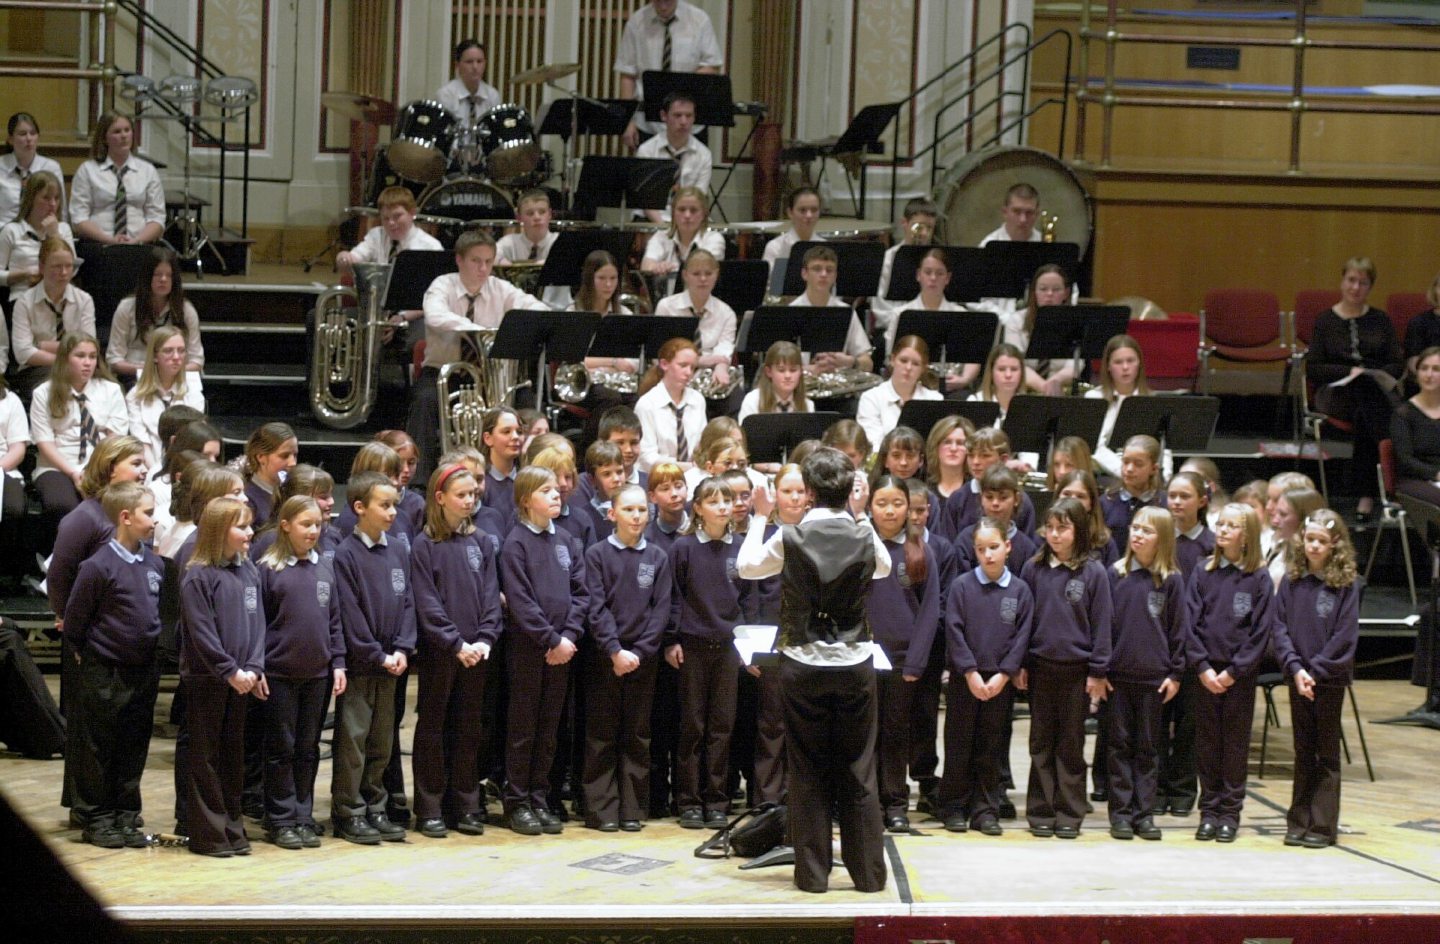 Strathburn Primary School Choir members performing during an EE carol concert